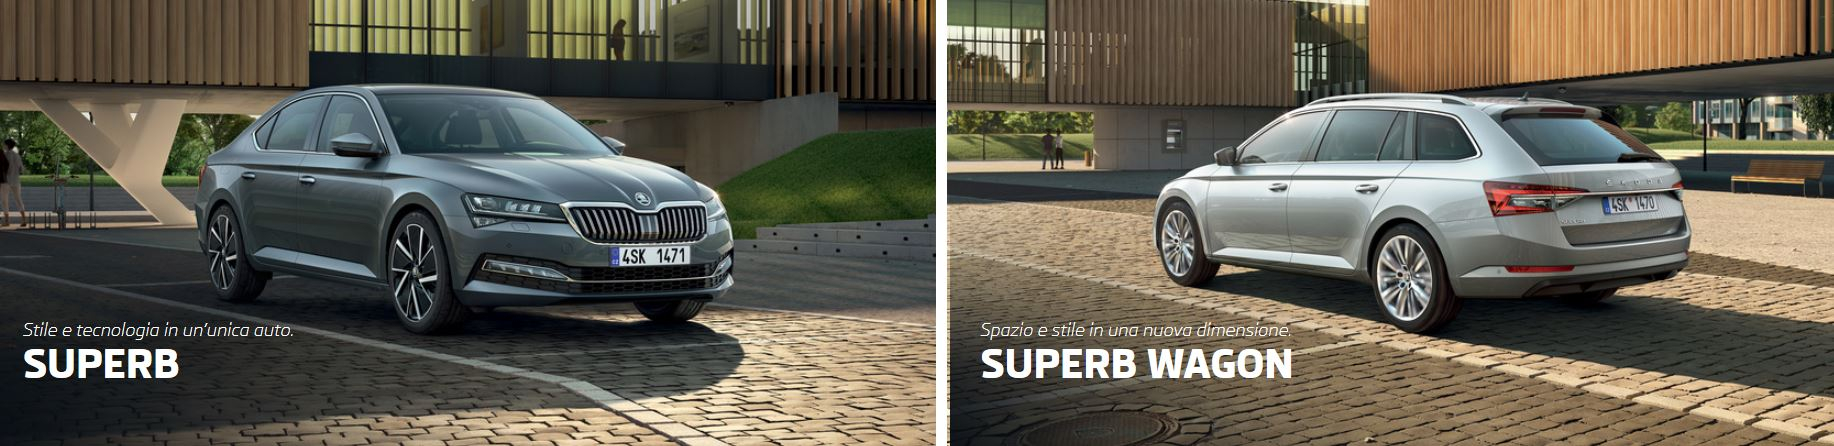 Nuova Škoda Superb: l'innovazione unita alla funzionalità